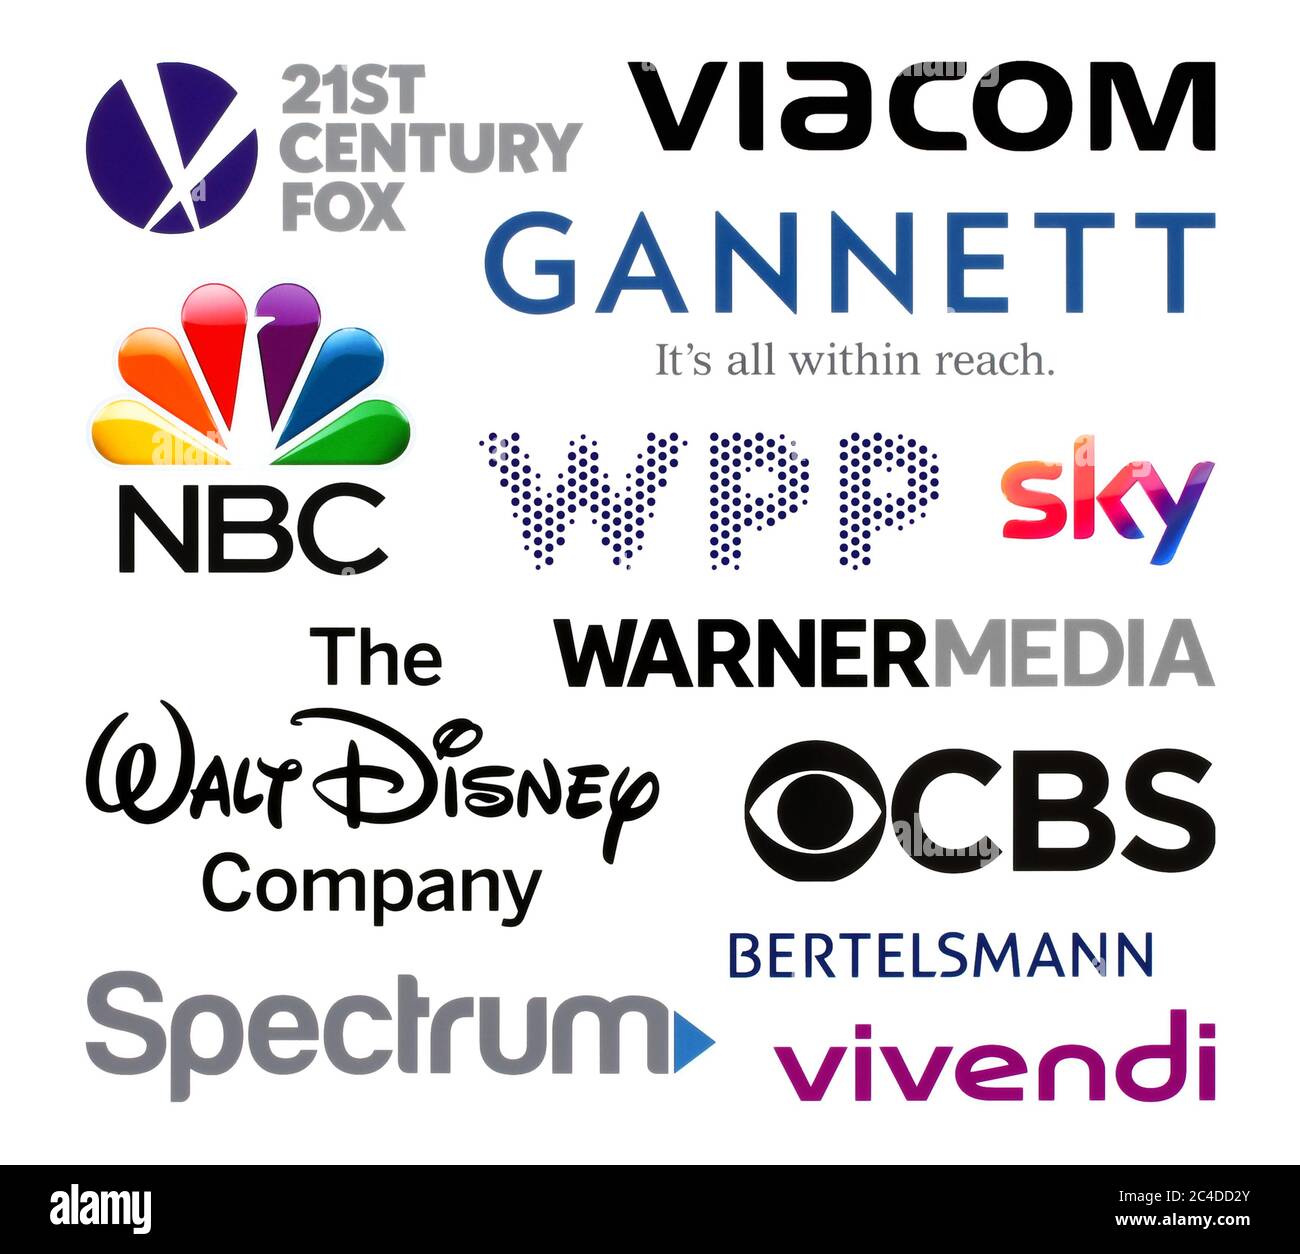 Kiev, Ucrania - 23 de febrero de 2020: Colección de logotipos de las mayores compañías de radiodifusión del mundo, como: 21st Century Fox, Viacom, Gannet, NBC, WPP, Foto de stock